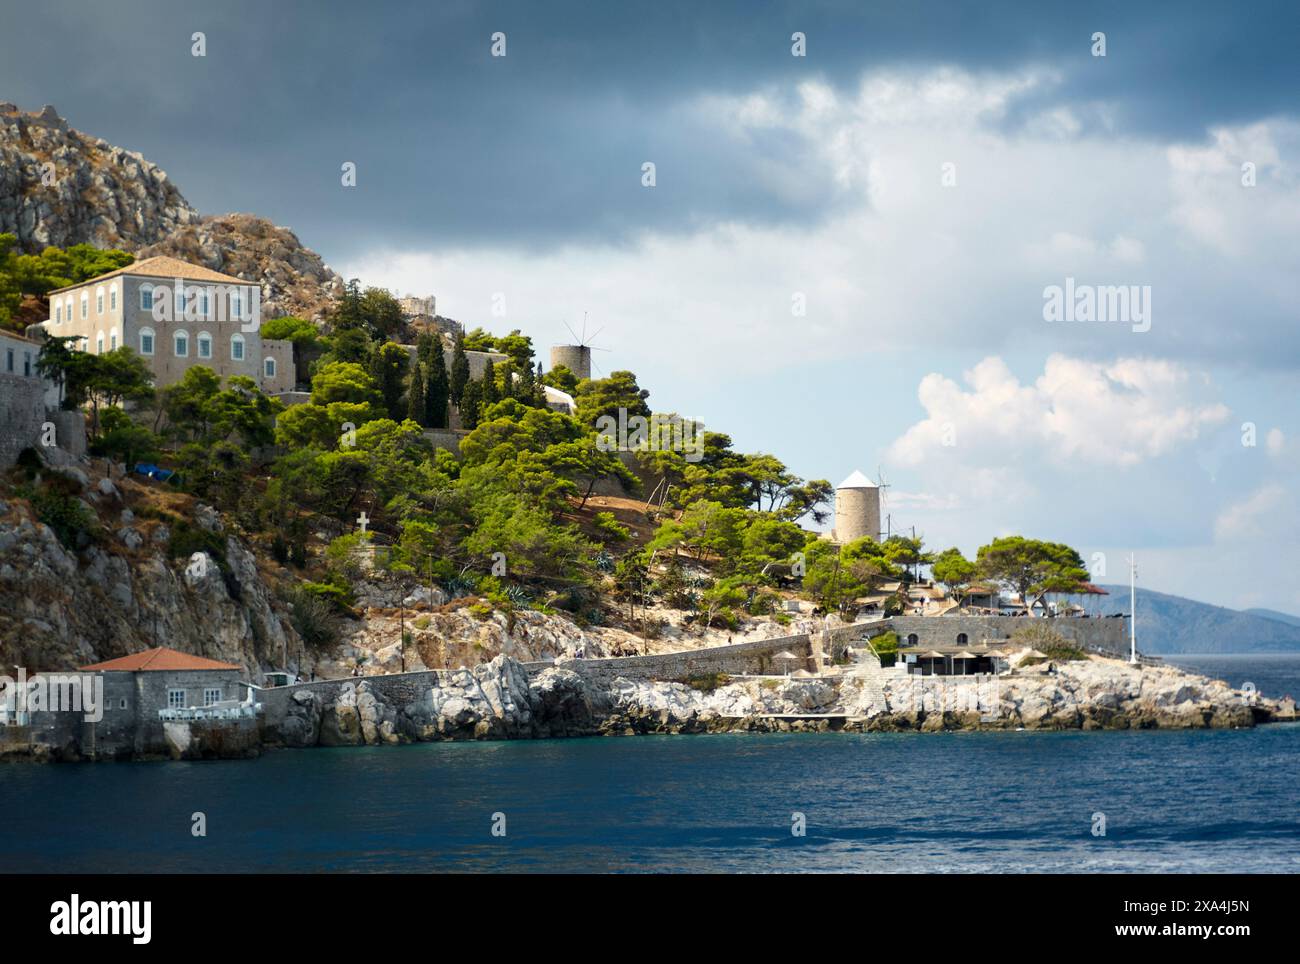 Une vue panoramique sur la côte avec une falaise accidentée ornée de bâtiments de style méditerranéen et une végétation luxuriante sous un ciel spectaculaire. Banque D'Images